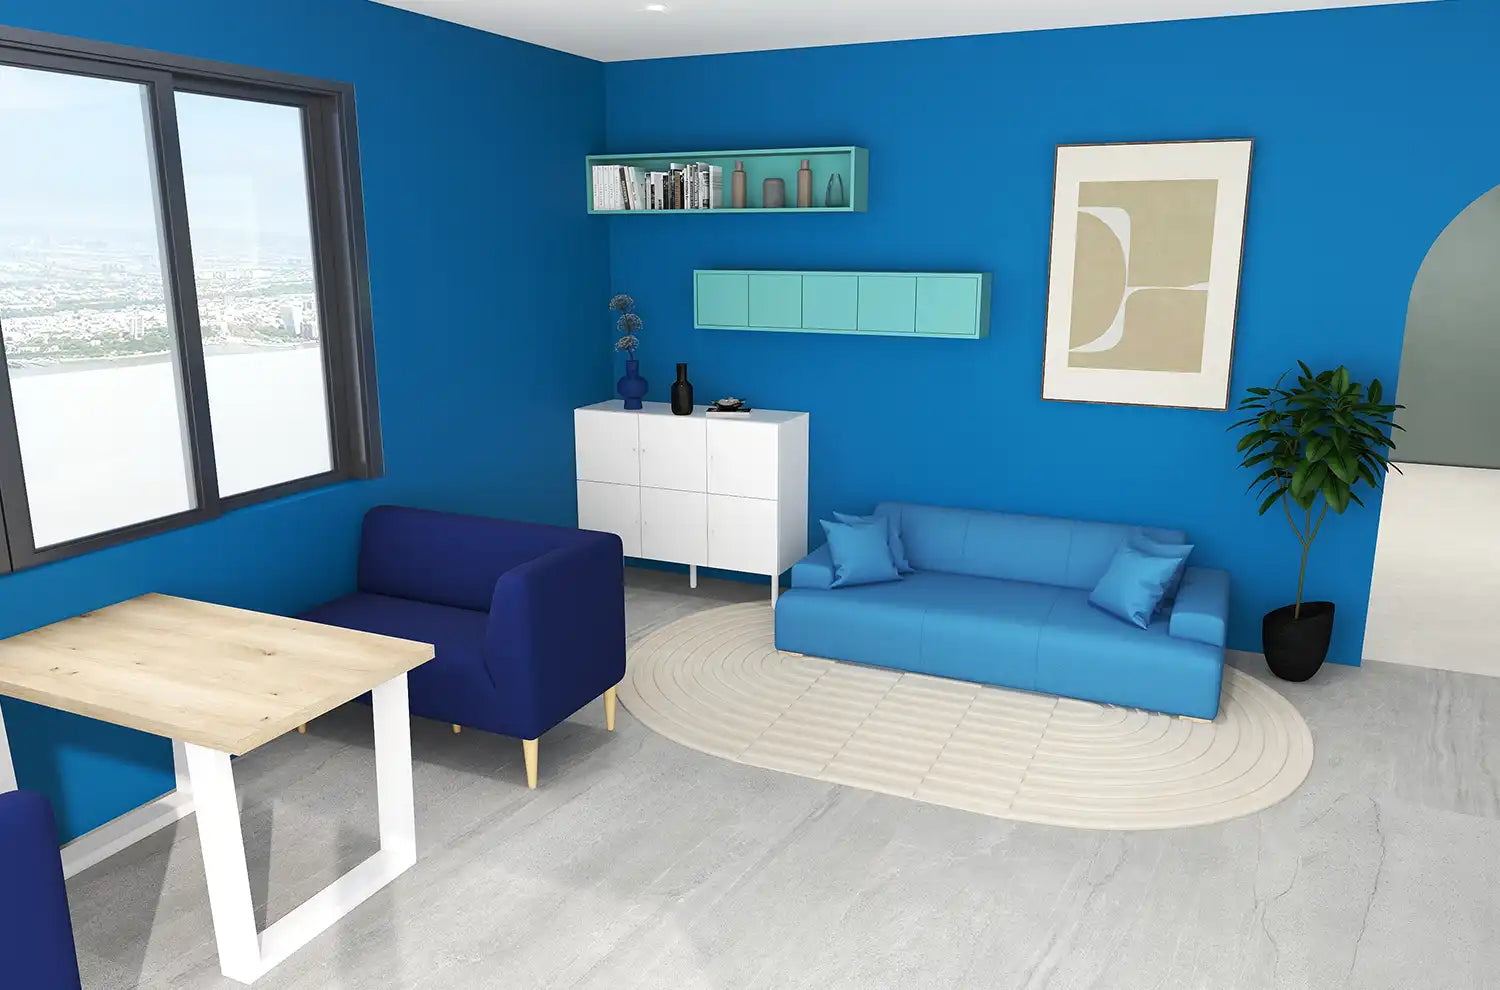 壁紙やソファなどが青色で統一されている部屋